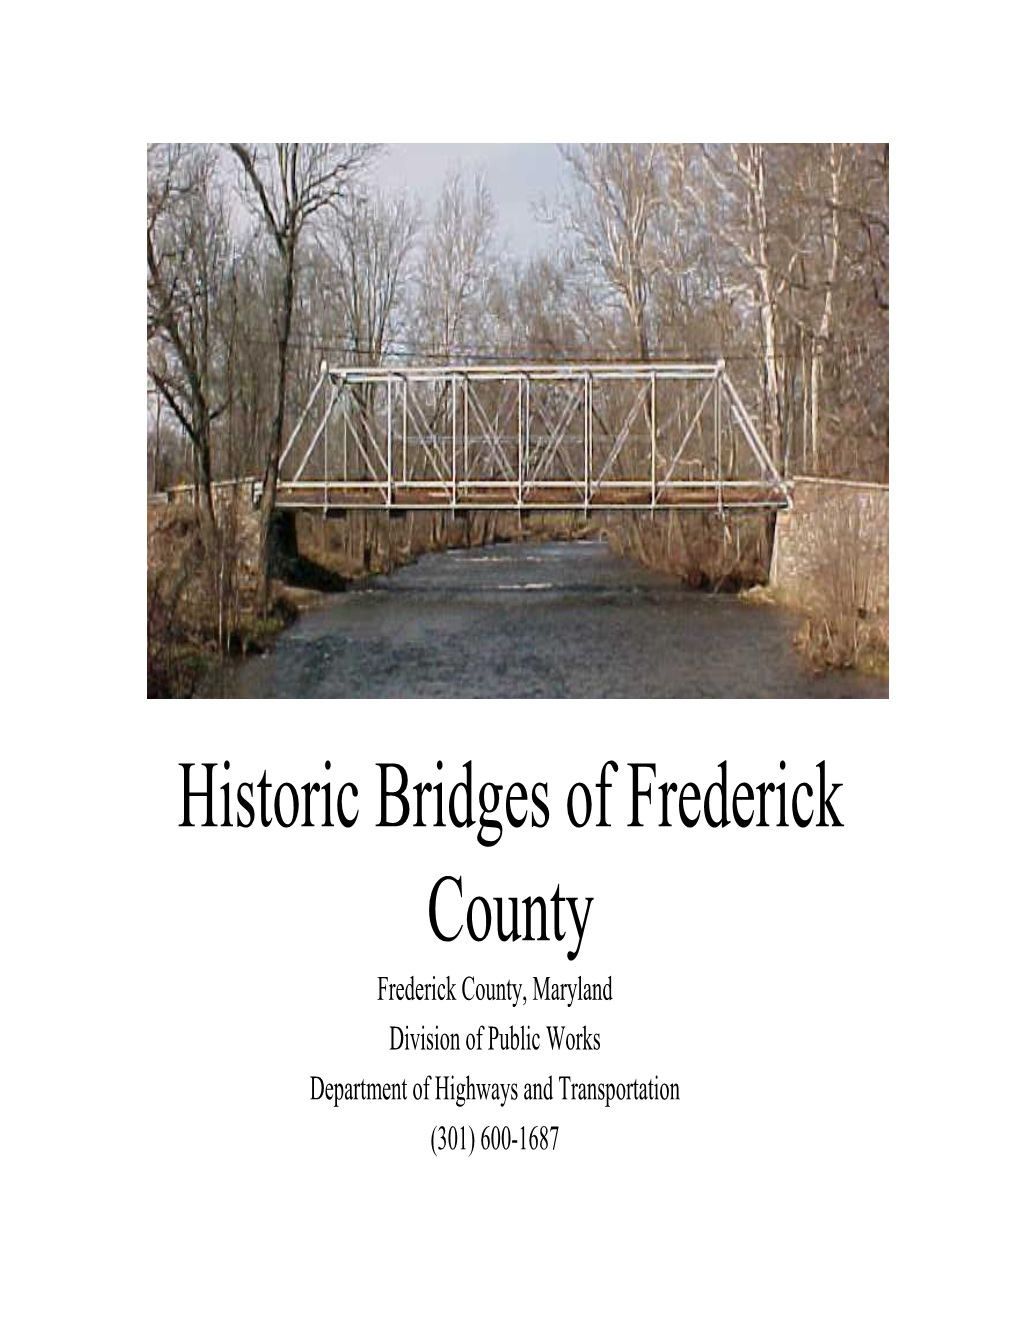 Historic Bridges of Frederick County